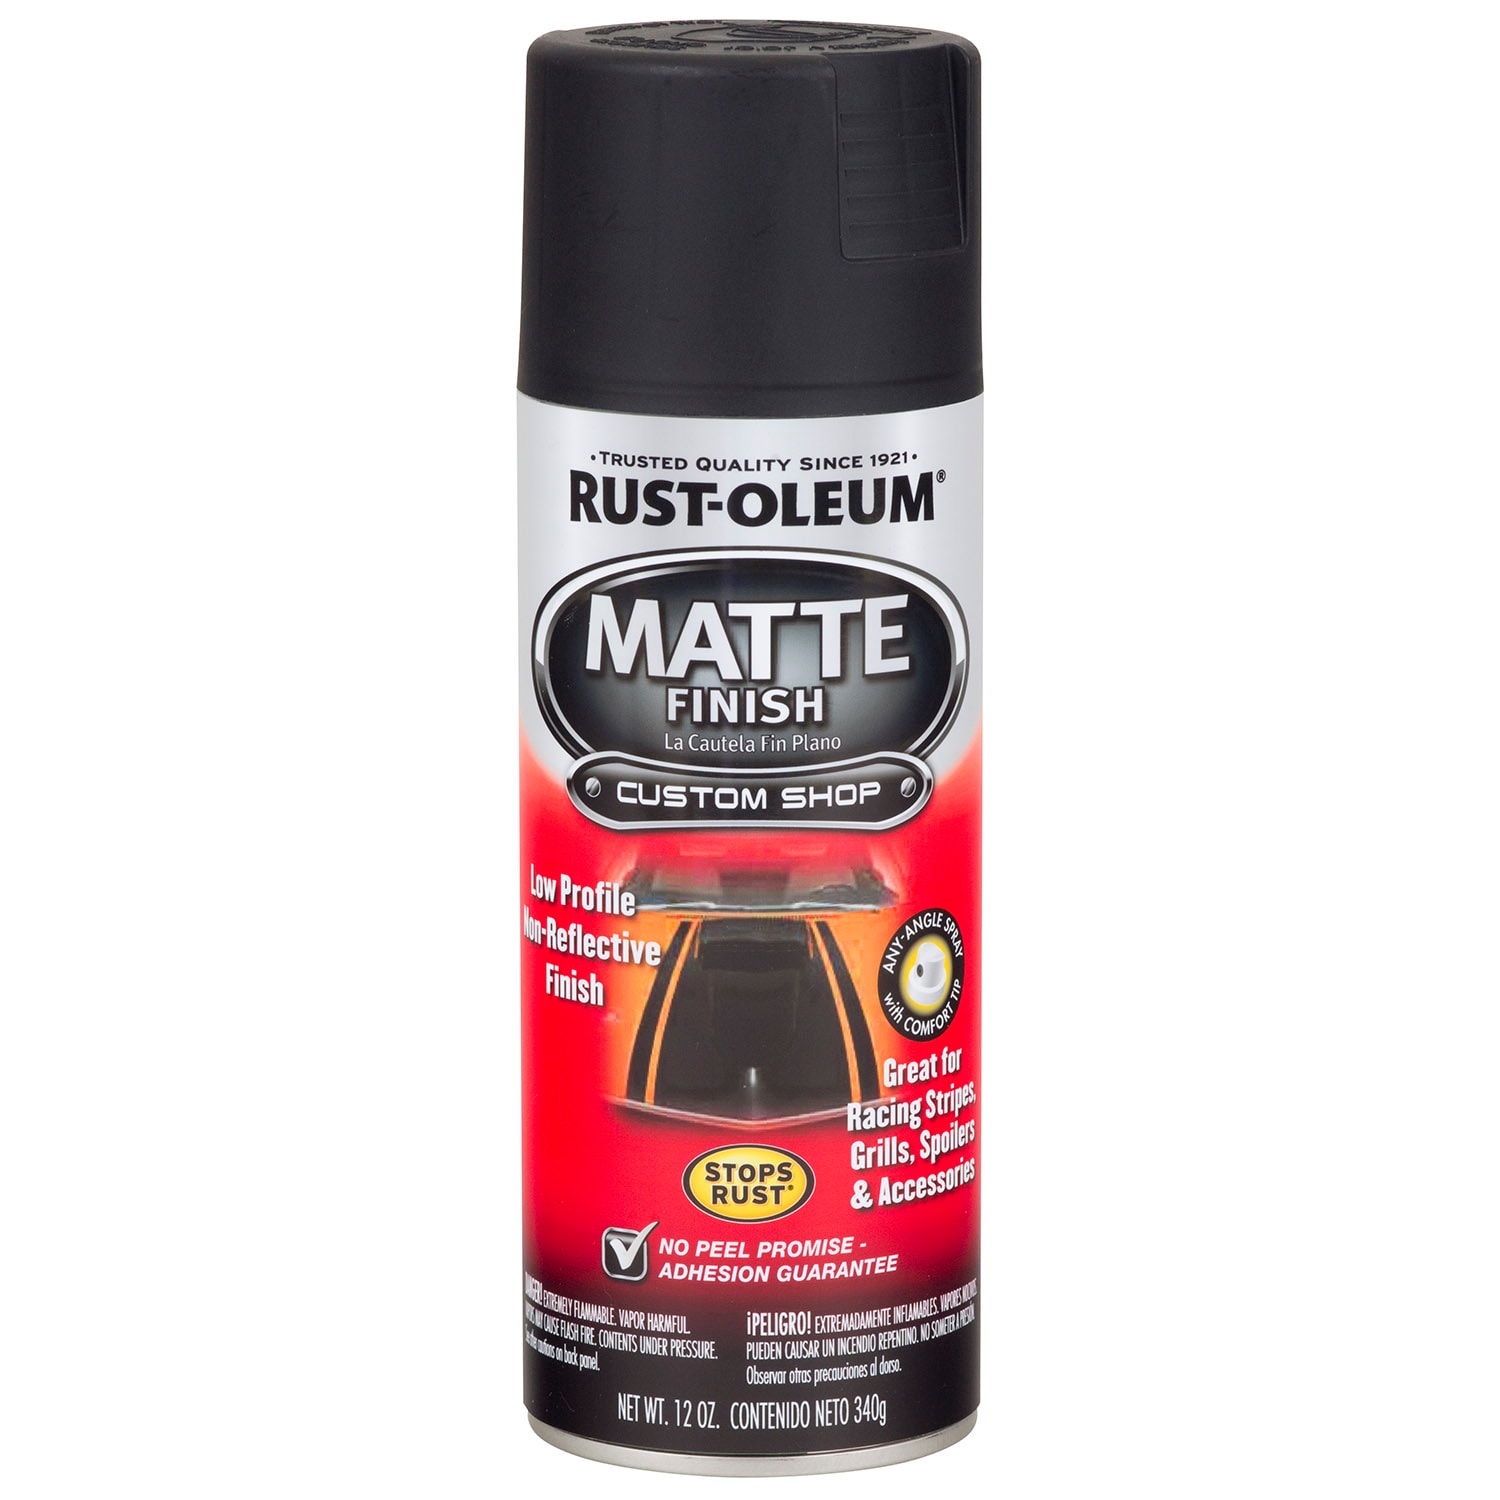 Matte Black Lacquer Spray Paint 13.52 fl oz (400 mL)